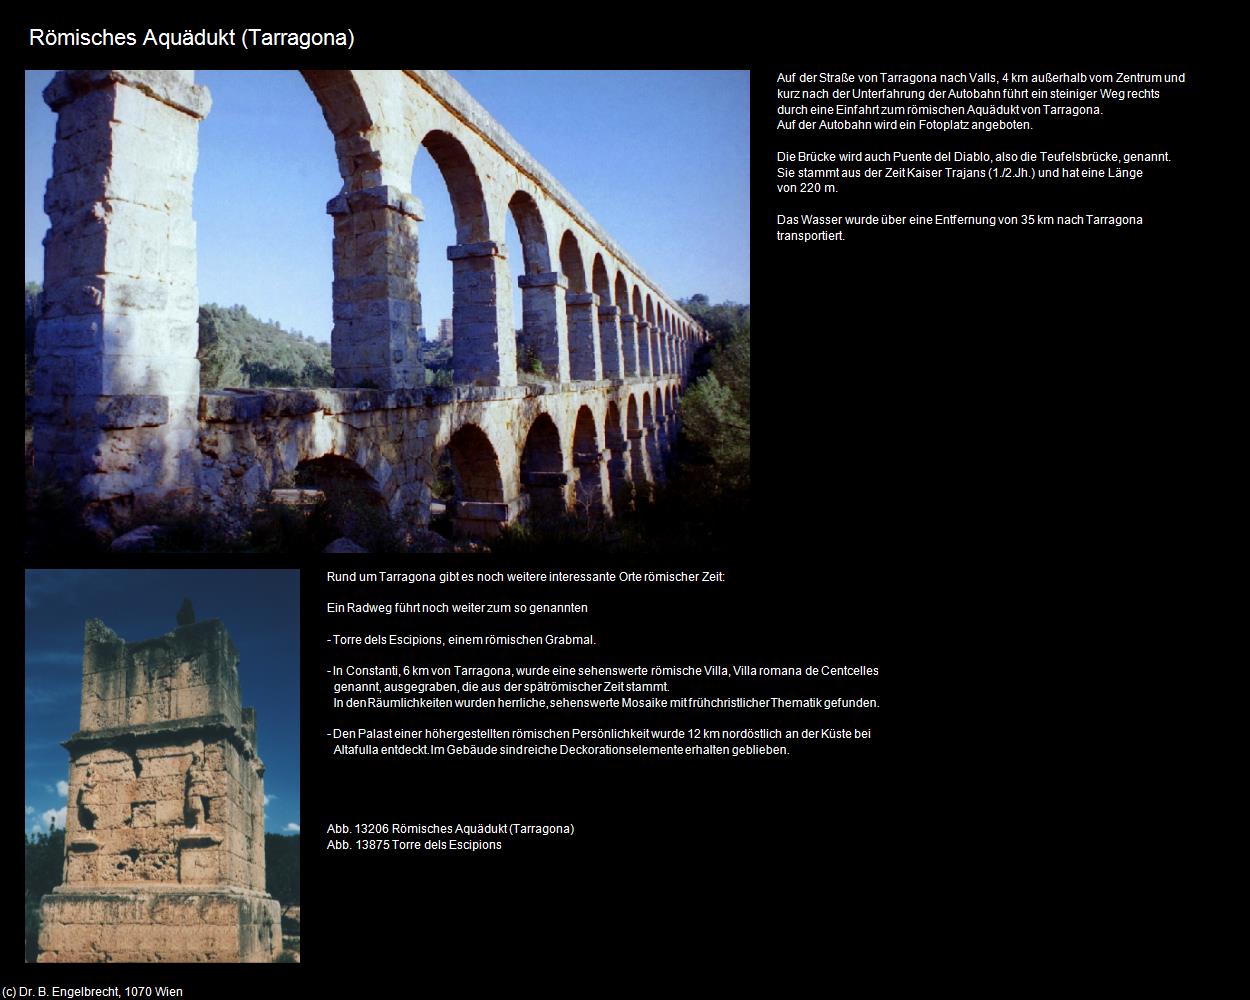 Römisches Aquädukt (Tarragona) in KATALONIEN